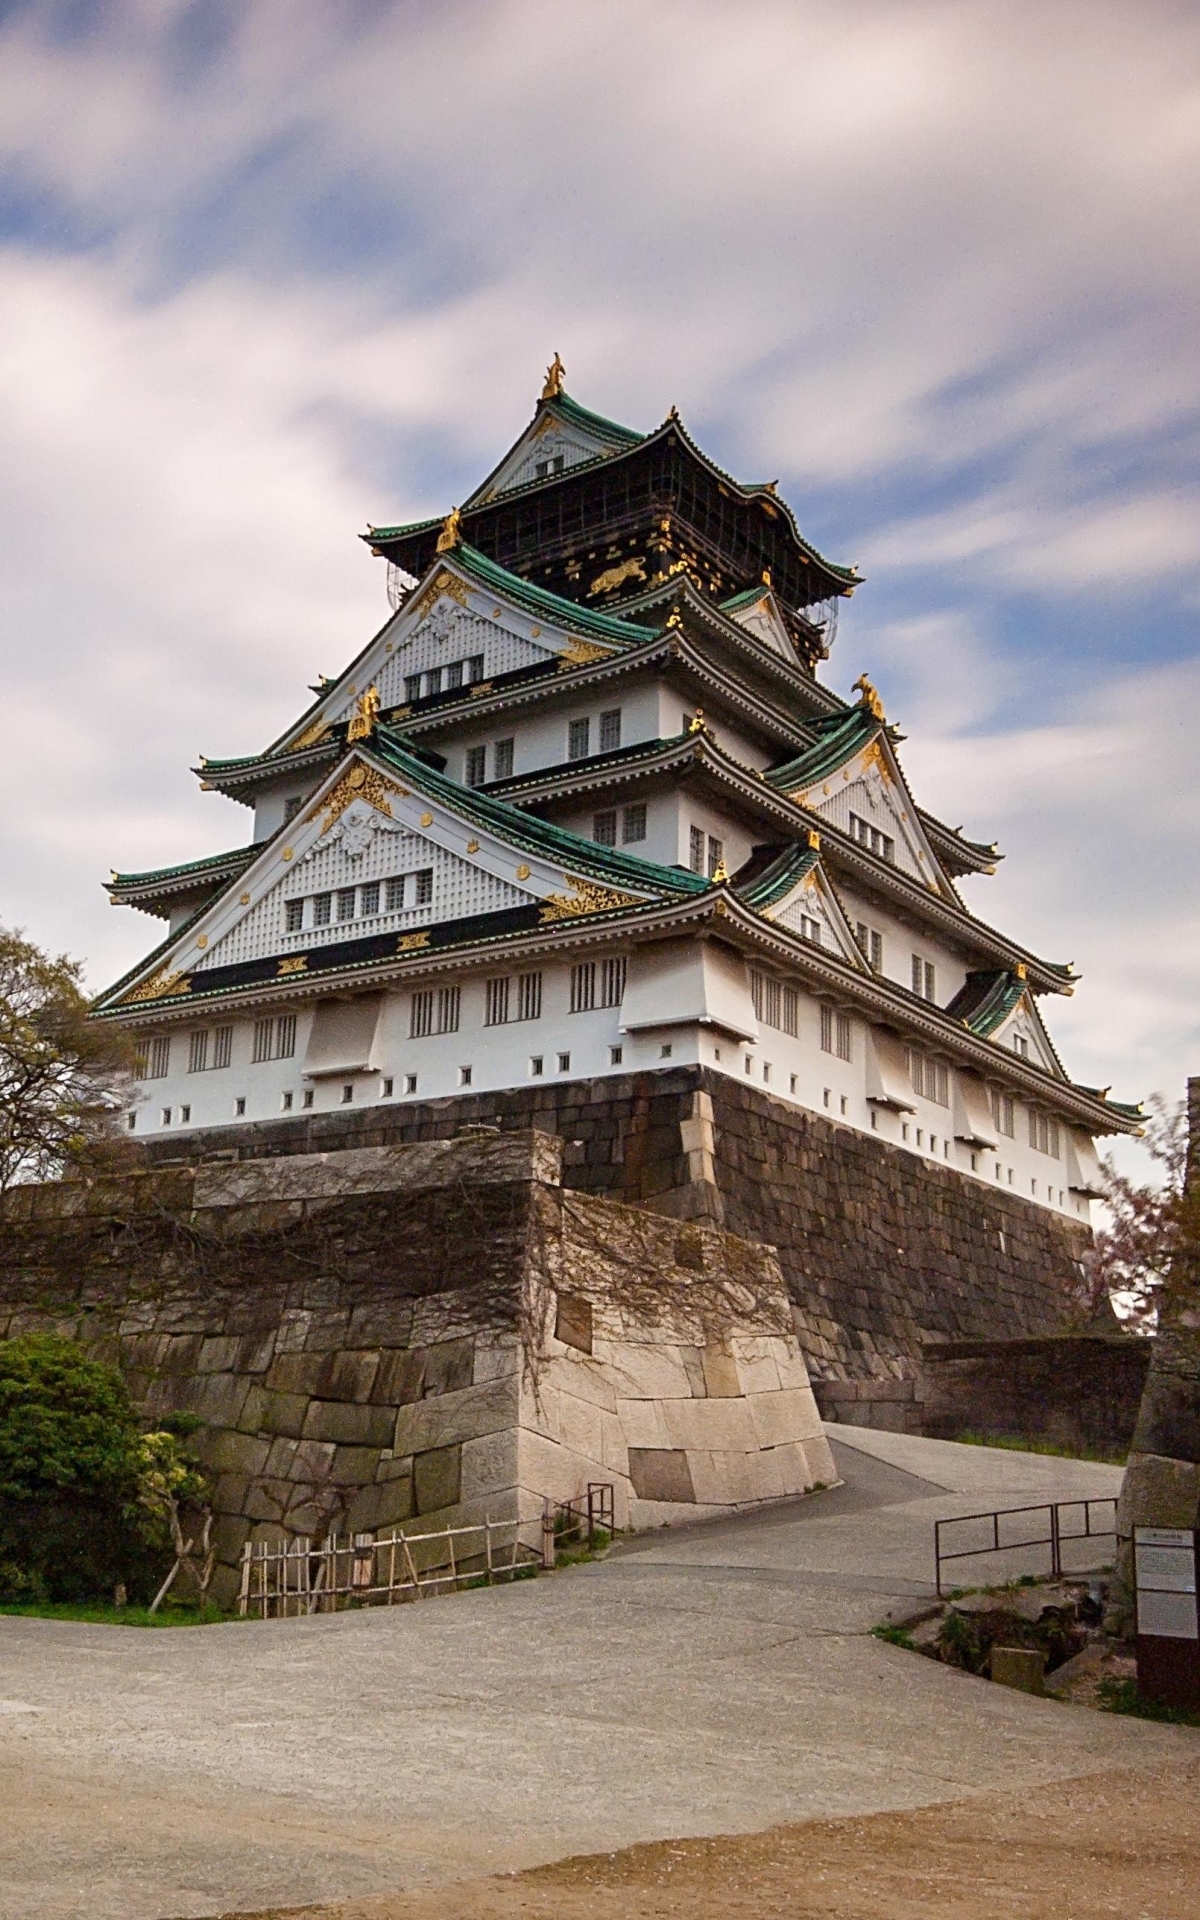 Скачать картинку Замки, Сделано Человеком, Осакский Замок в телефон бесплатно.